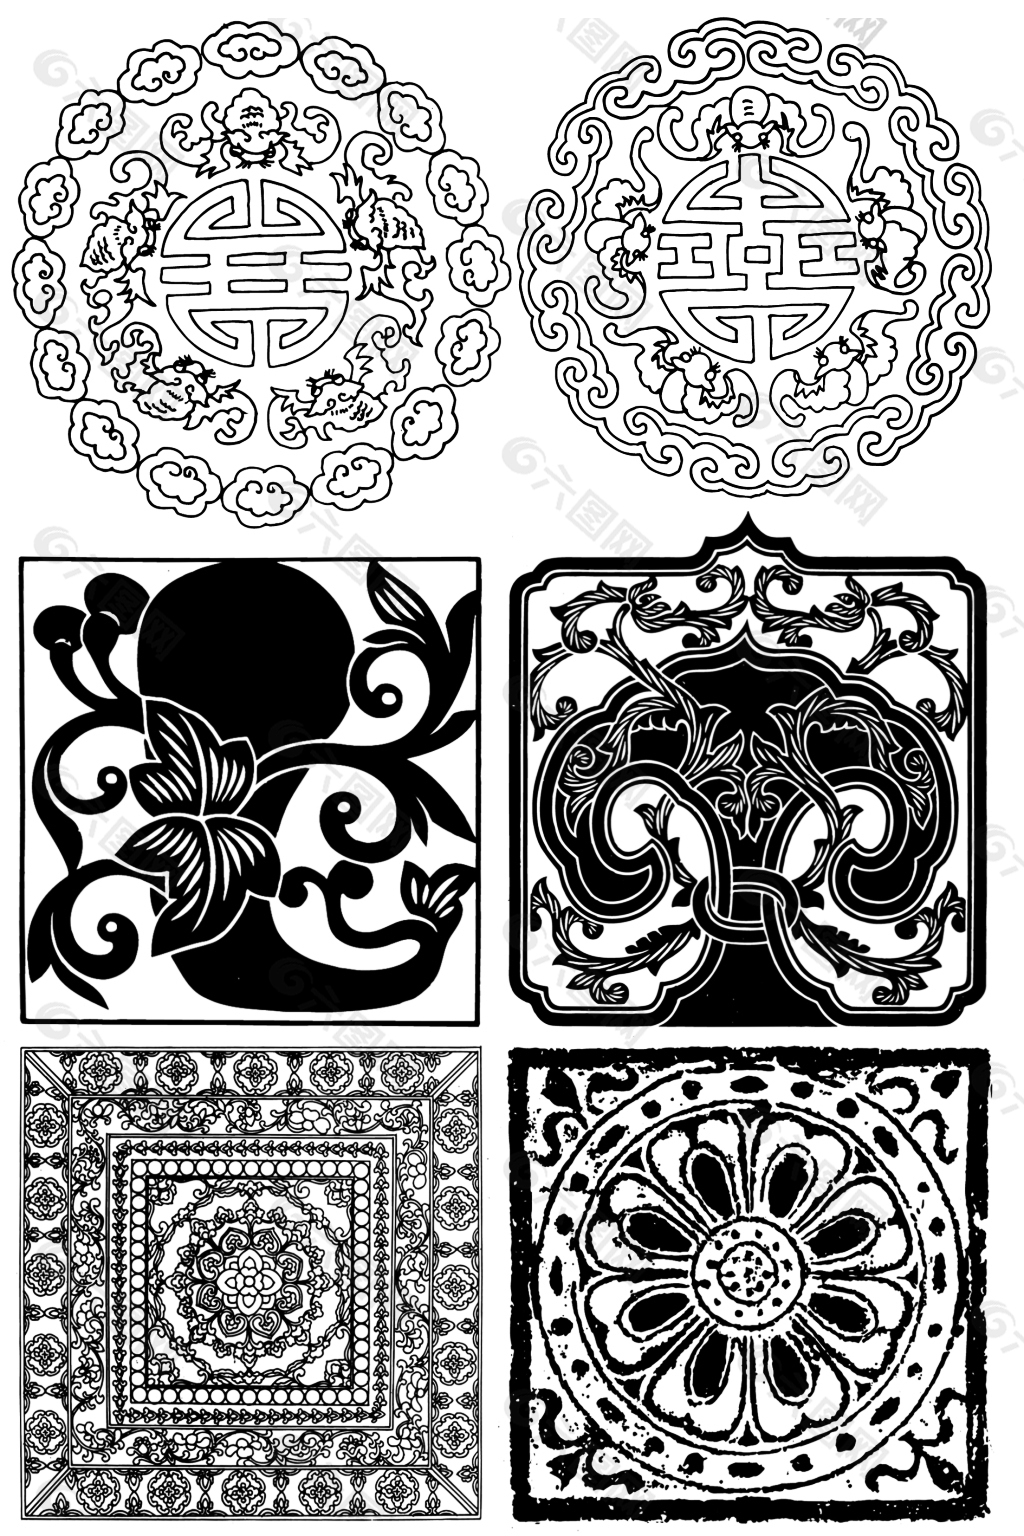 中国传统纹样图案排列图片